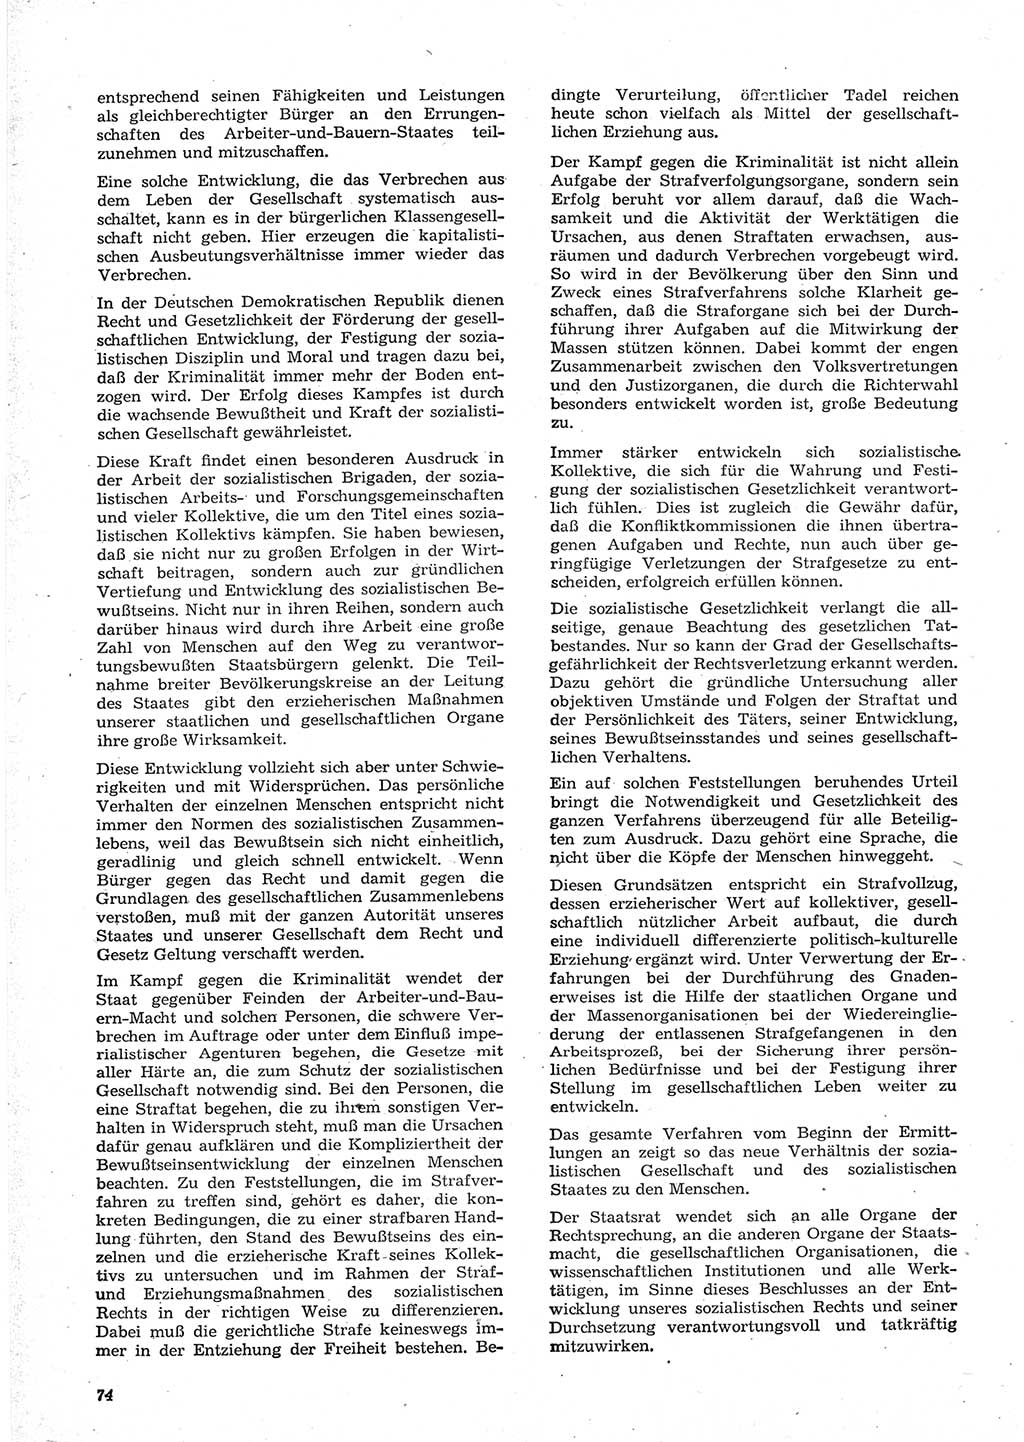 Neue Justiz (NJ), Zeitschrift für Recht und Rechtswissenschaft [Deutsche Demokratische Republik (DDR)], 15. Jahrgang 1961, Seite 74 (NJ DDR 1961, S. 74)